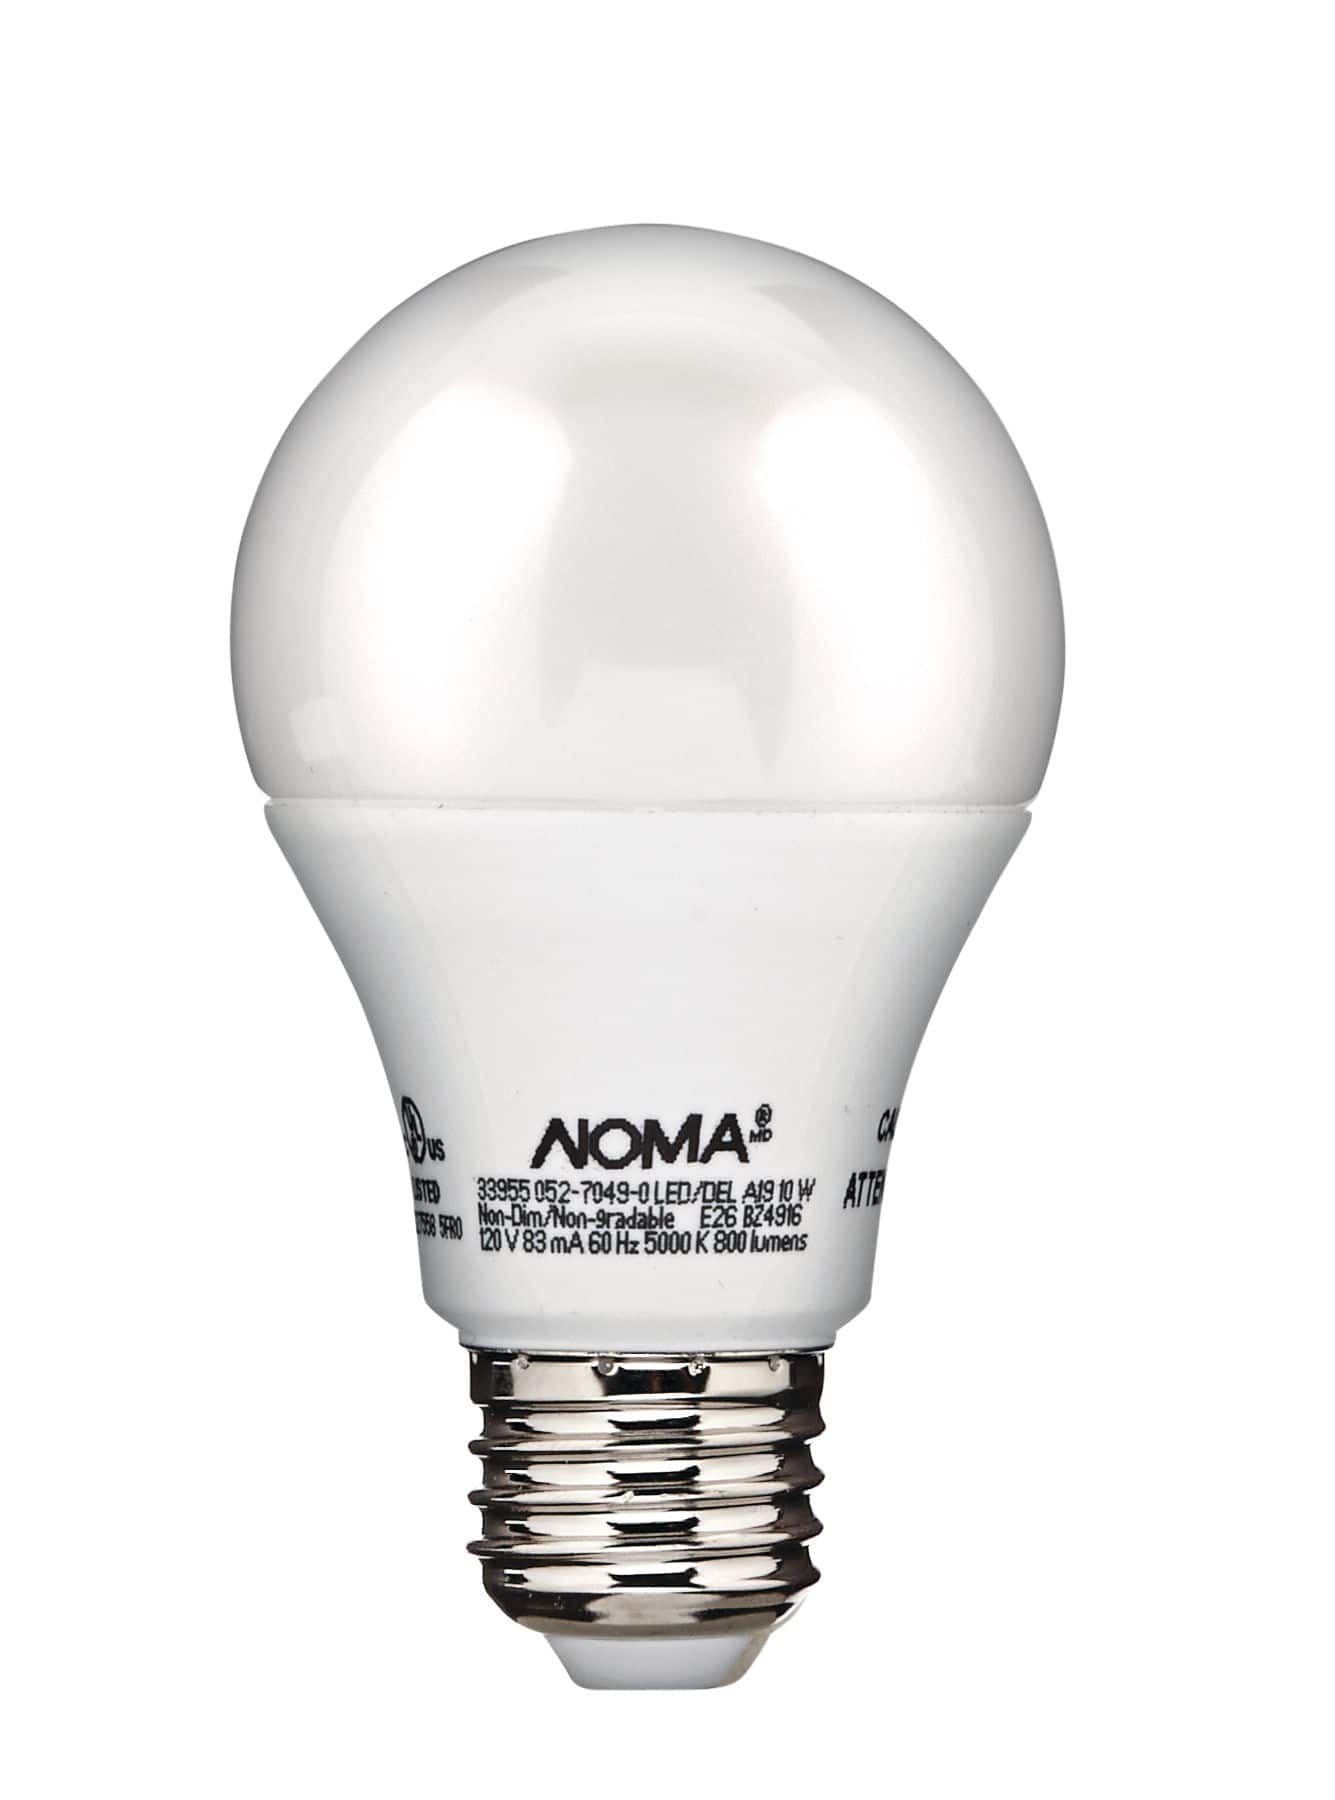 NOMA A19 E26 Base Household Non-Dimmable LED Light Bulbs, 5000K